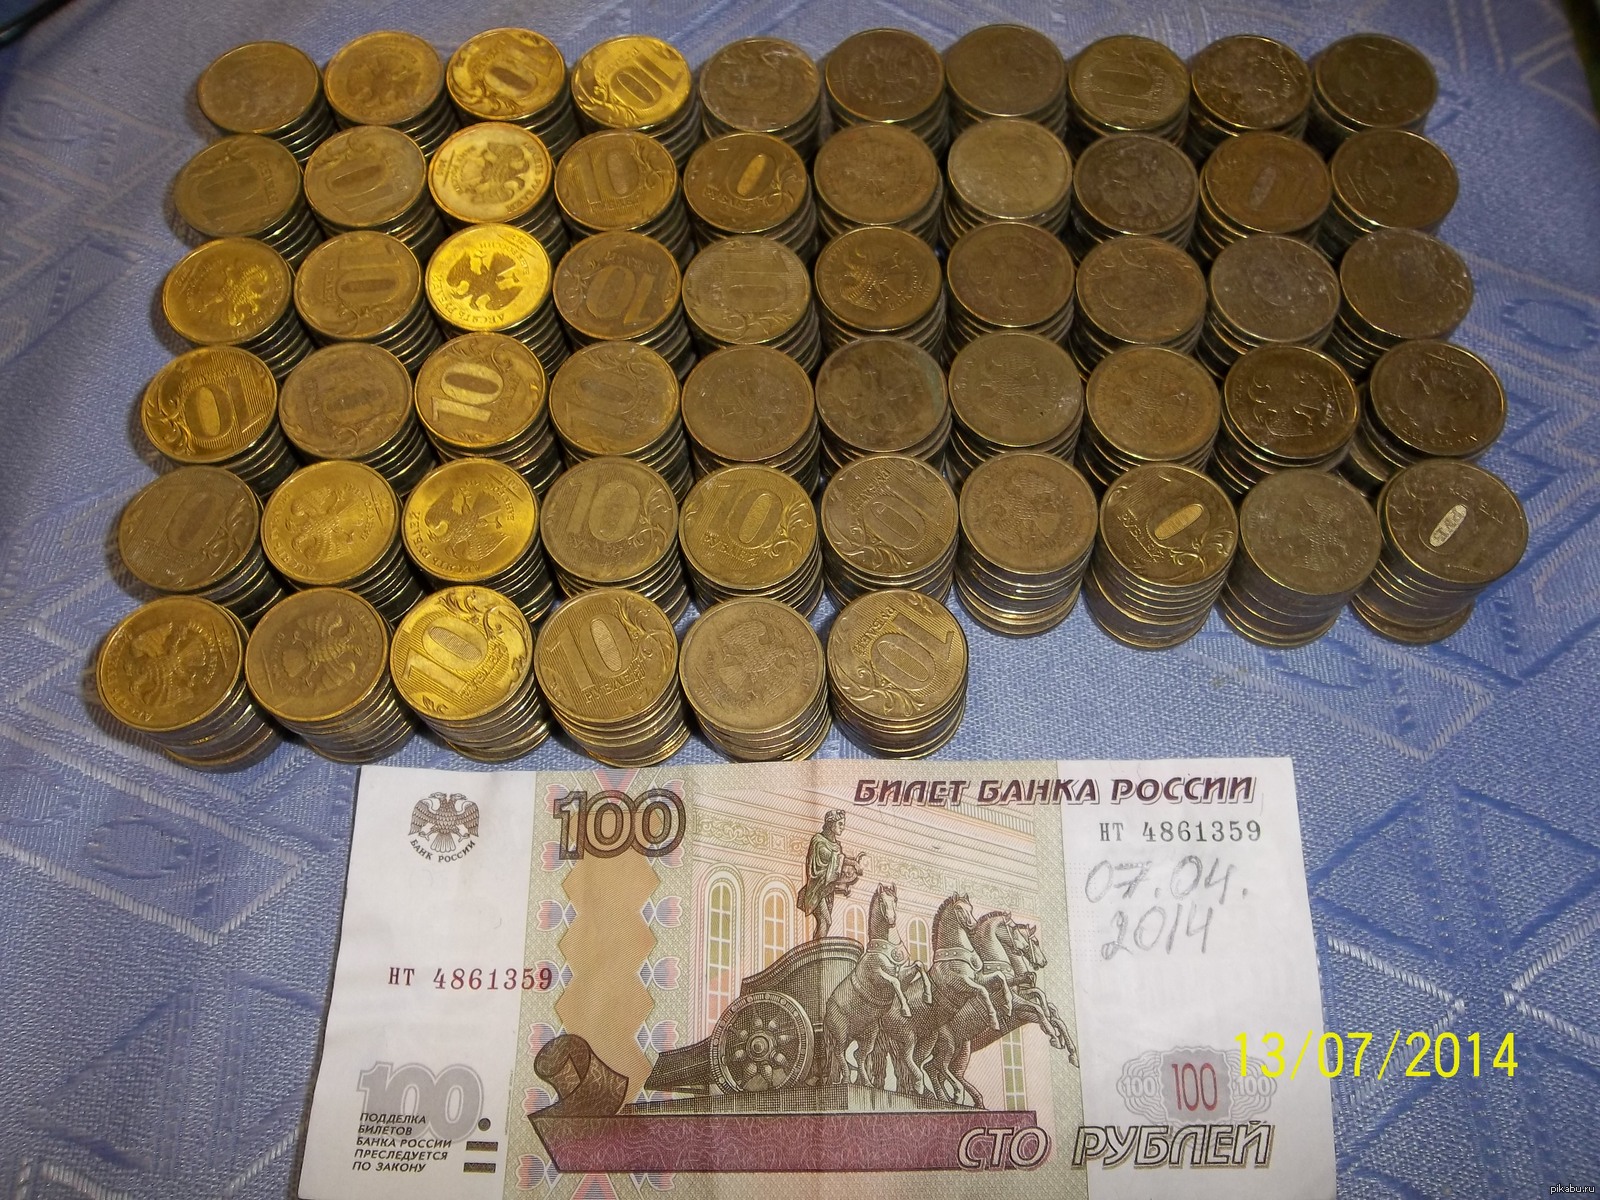 5 тысяч по 10 рублей. 1000 Монет по 5 рублей. 1000 Монет по 10 рублей. 1000 Рублей 10 рублевыми монетами. 100 000 По 10 рублей монетами.